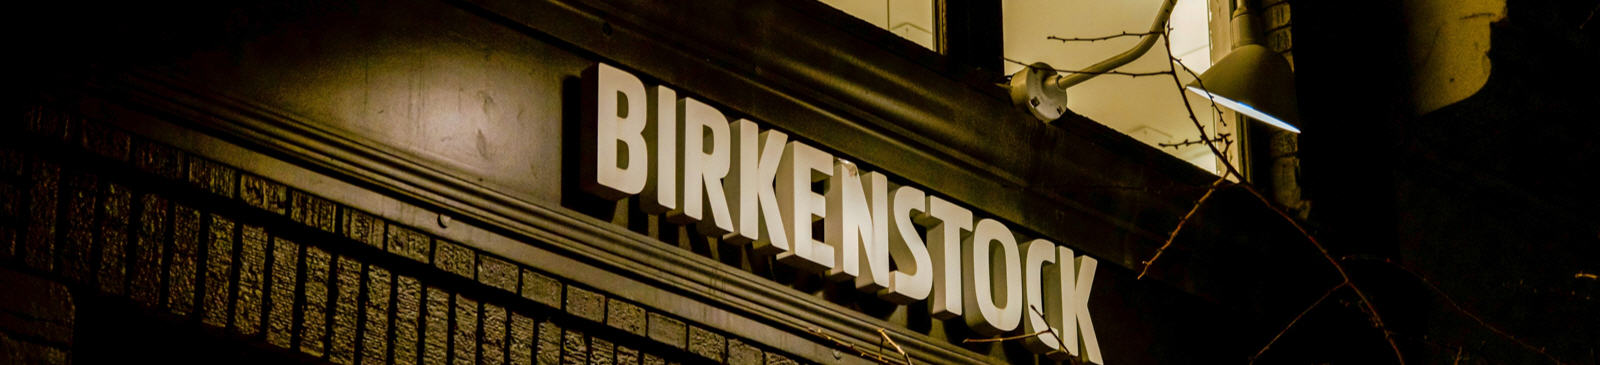 De Birkenstock IPO beursgang.